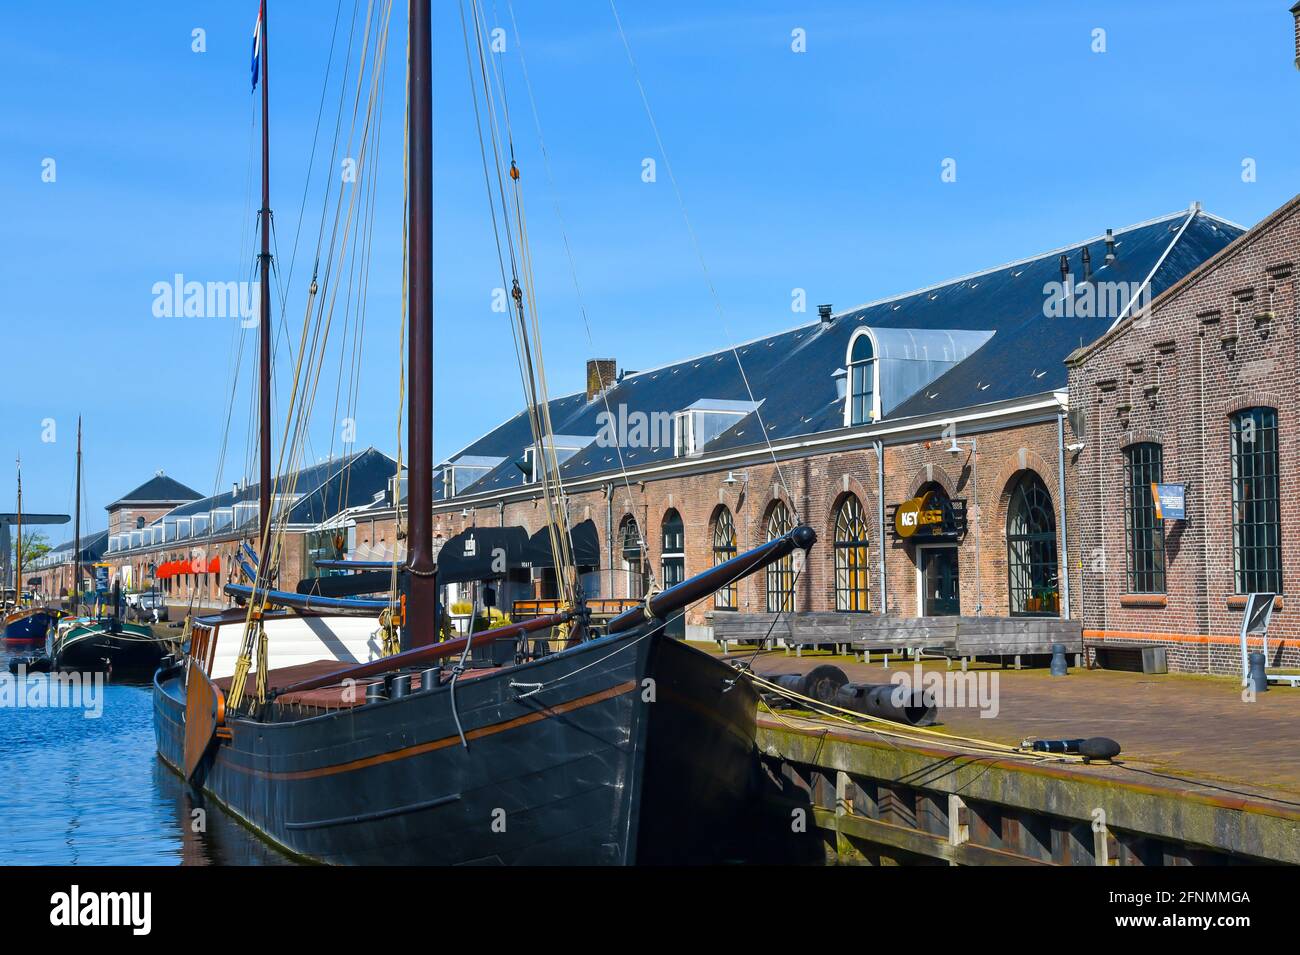 Den Helder, pays-Bas. Les bateaux et les entrepôts de l'ancien chantier naval Willems à Den Helder, aux pays-Bas. Photo de haute qualité. Patrimoine industriel. Banque D'Images